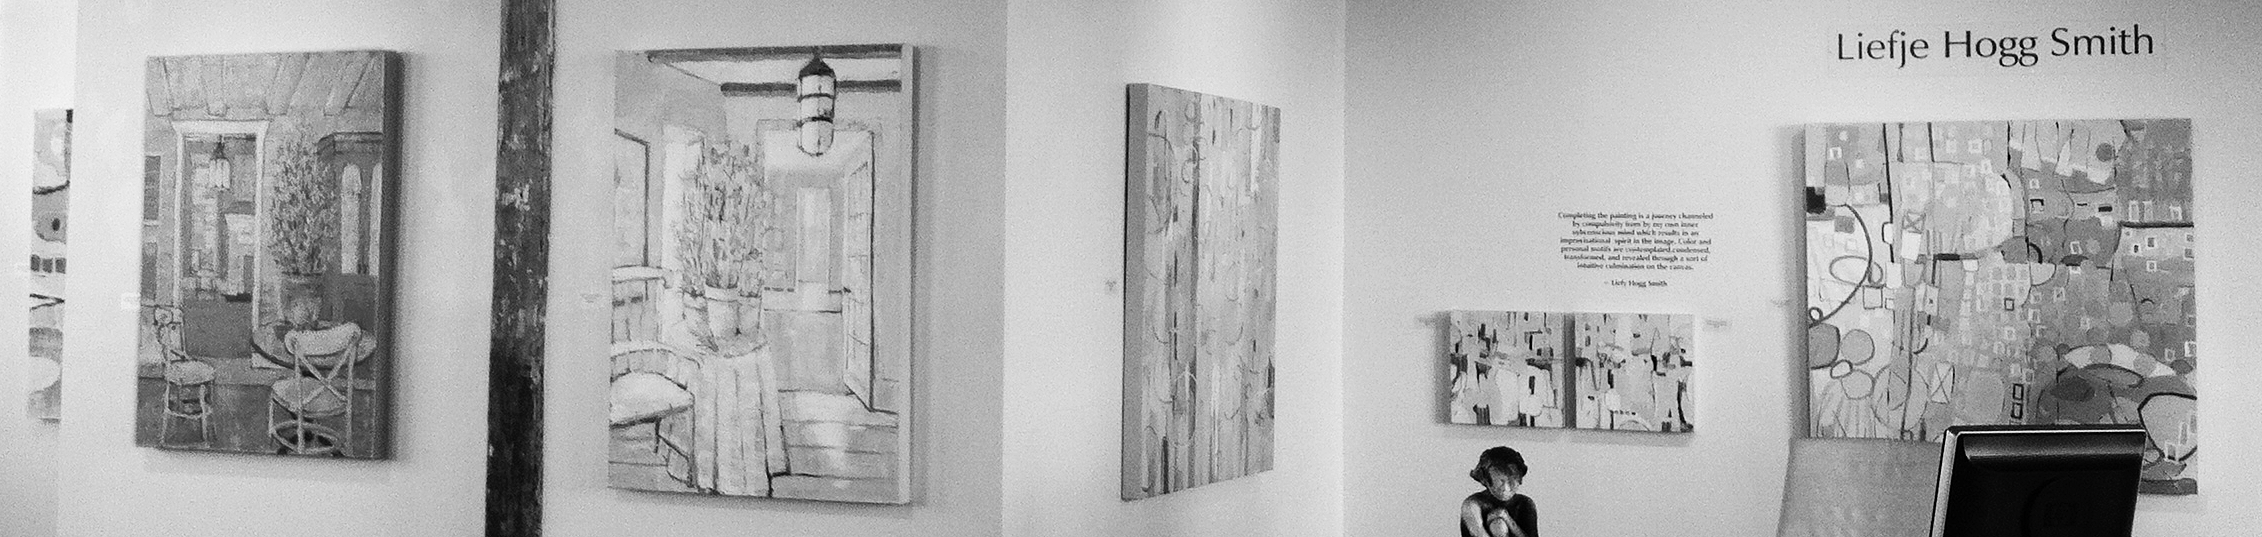 Liefje's Work at Fischer Galleries